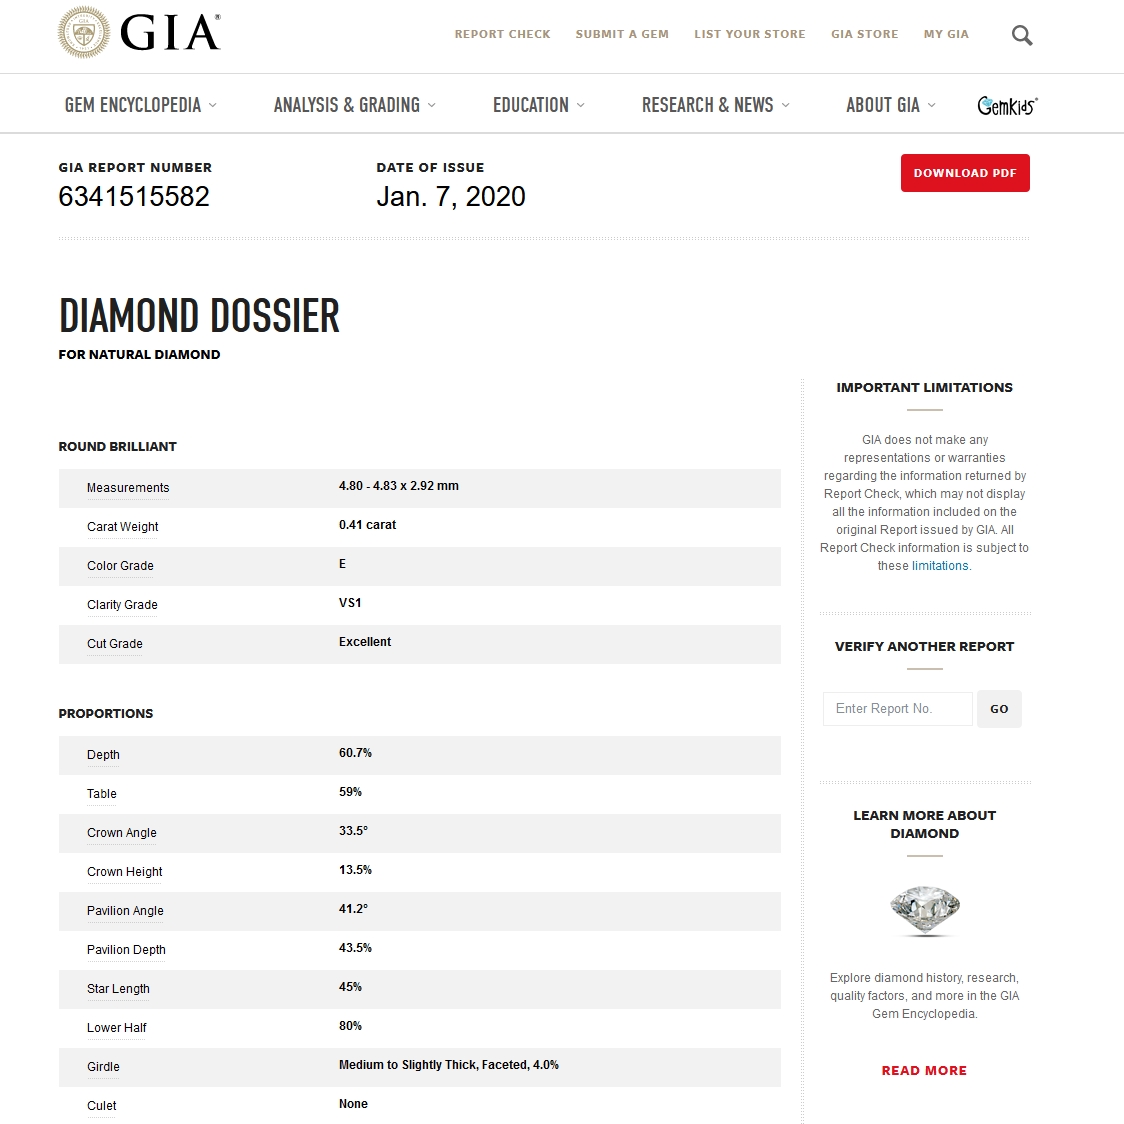 Diamante Naturale Certificato GIA Kt. 0,41 Colore E Purezza VS1